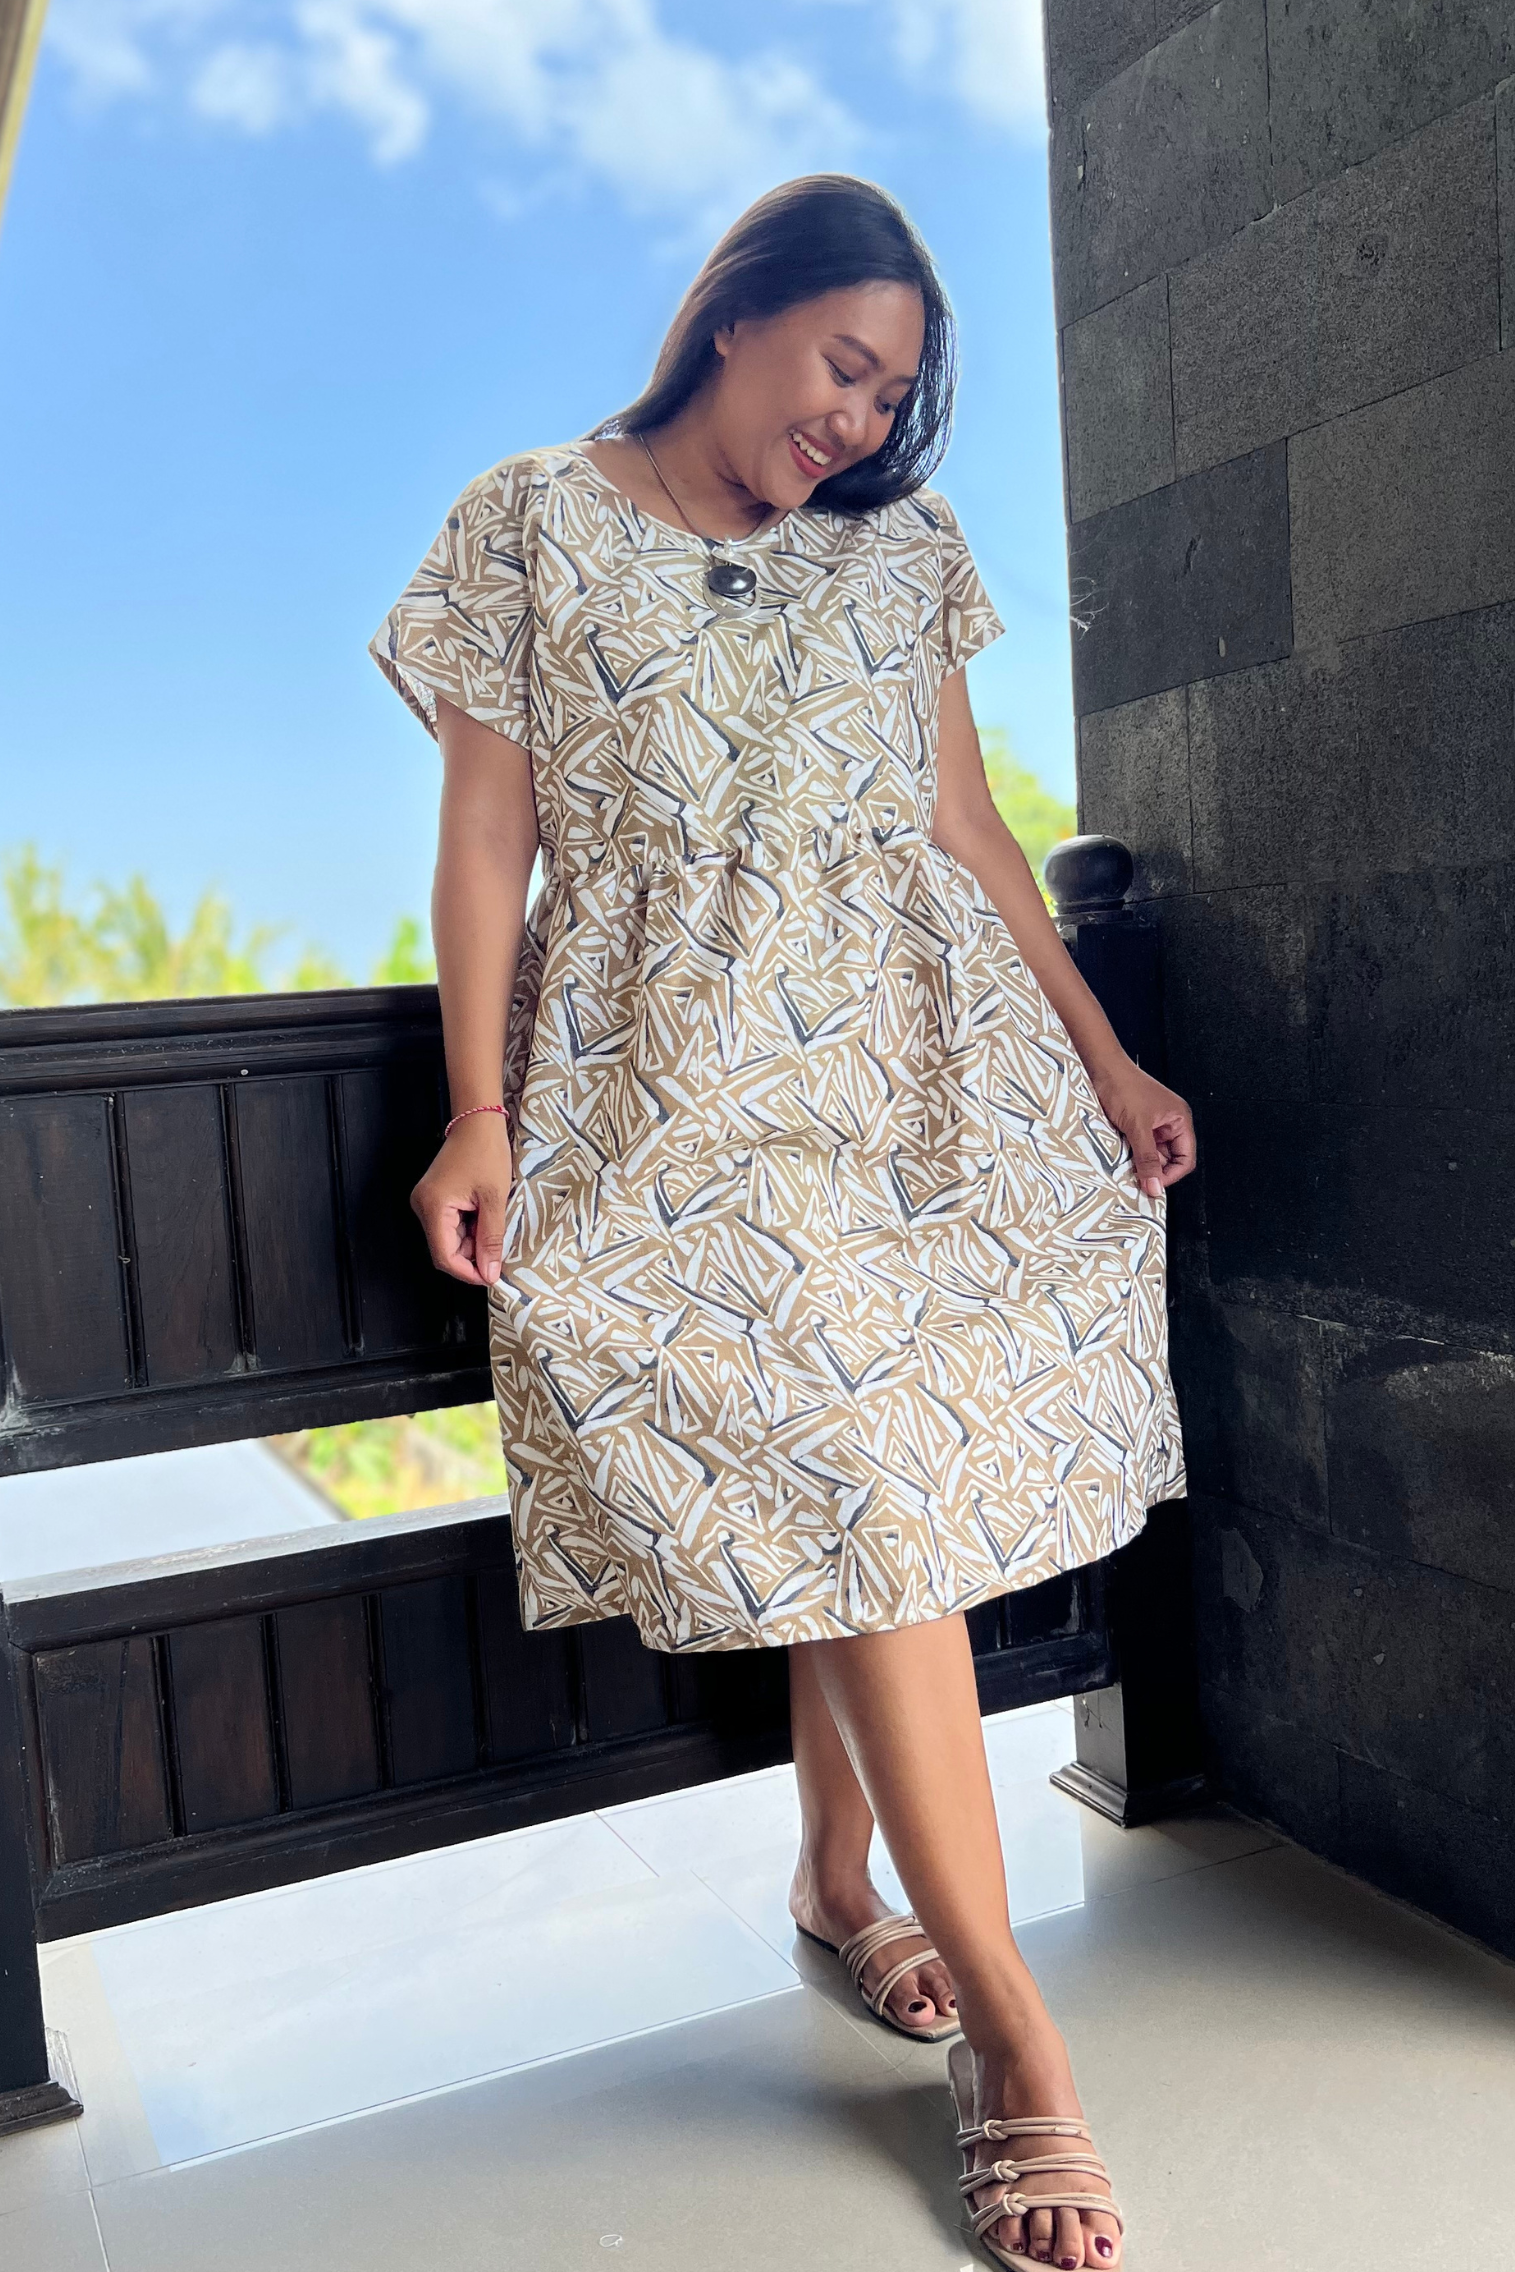 Kita Ku model wearing a linen natural and mustard abstract printed dress